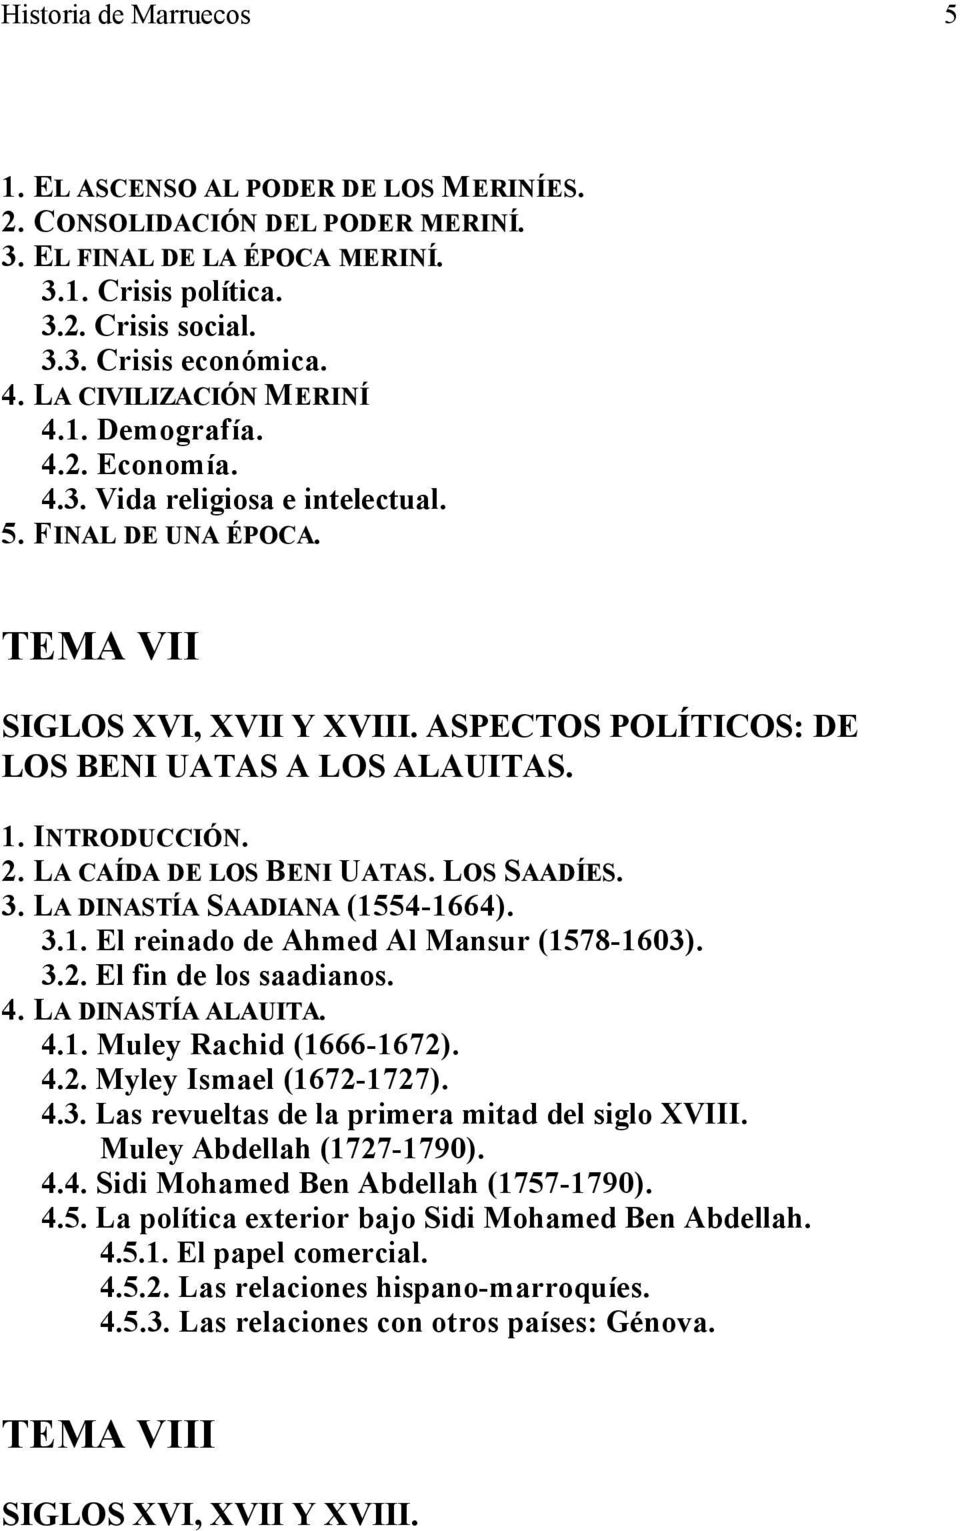 ASPECTOS POLÍTICOS: DE LOS BENI UATAS A LOS ALAUITAS. 1. INTRODUCCIÓN. 2. LA CAÍDA DE LOS BENI UATAS. LOS SAADÍES. 3. LA DINASTÍA SAADIANA (1554-1664). 3.1. El reinado de Ahmed Al Mansur (1578-1603).